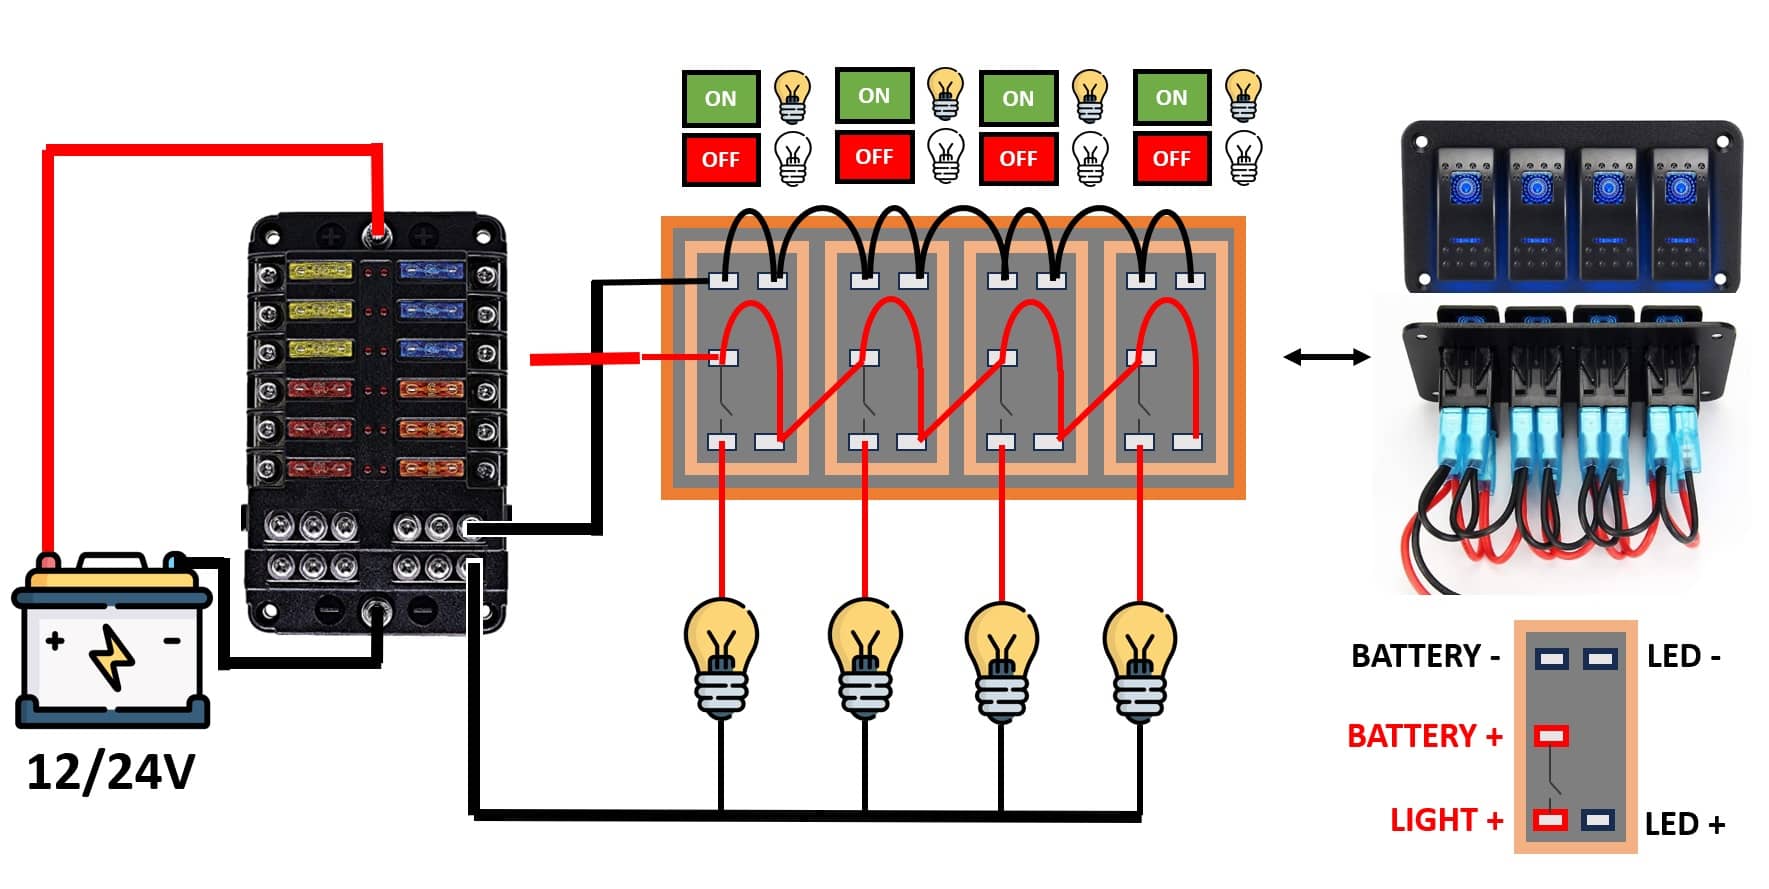 schema di montaggio per un set di rocker switches - set di interruttori a 12-24V DC in parallelo